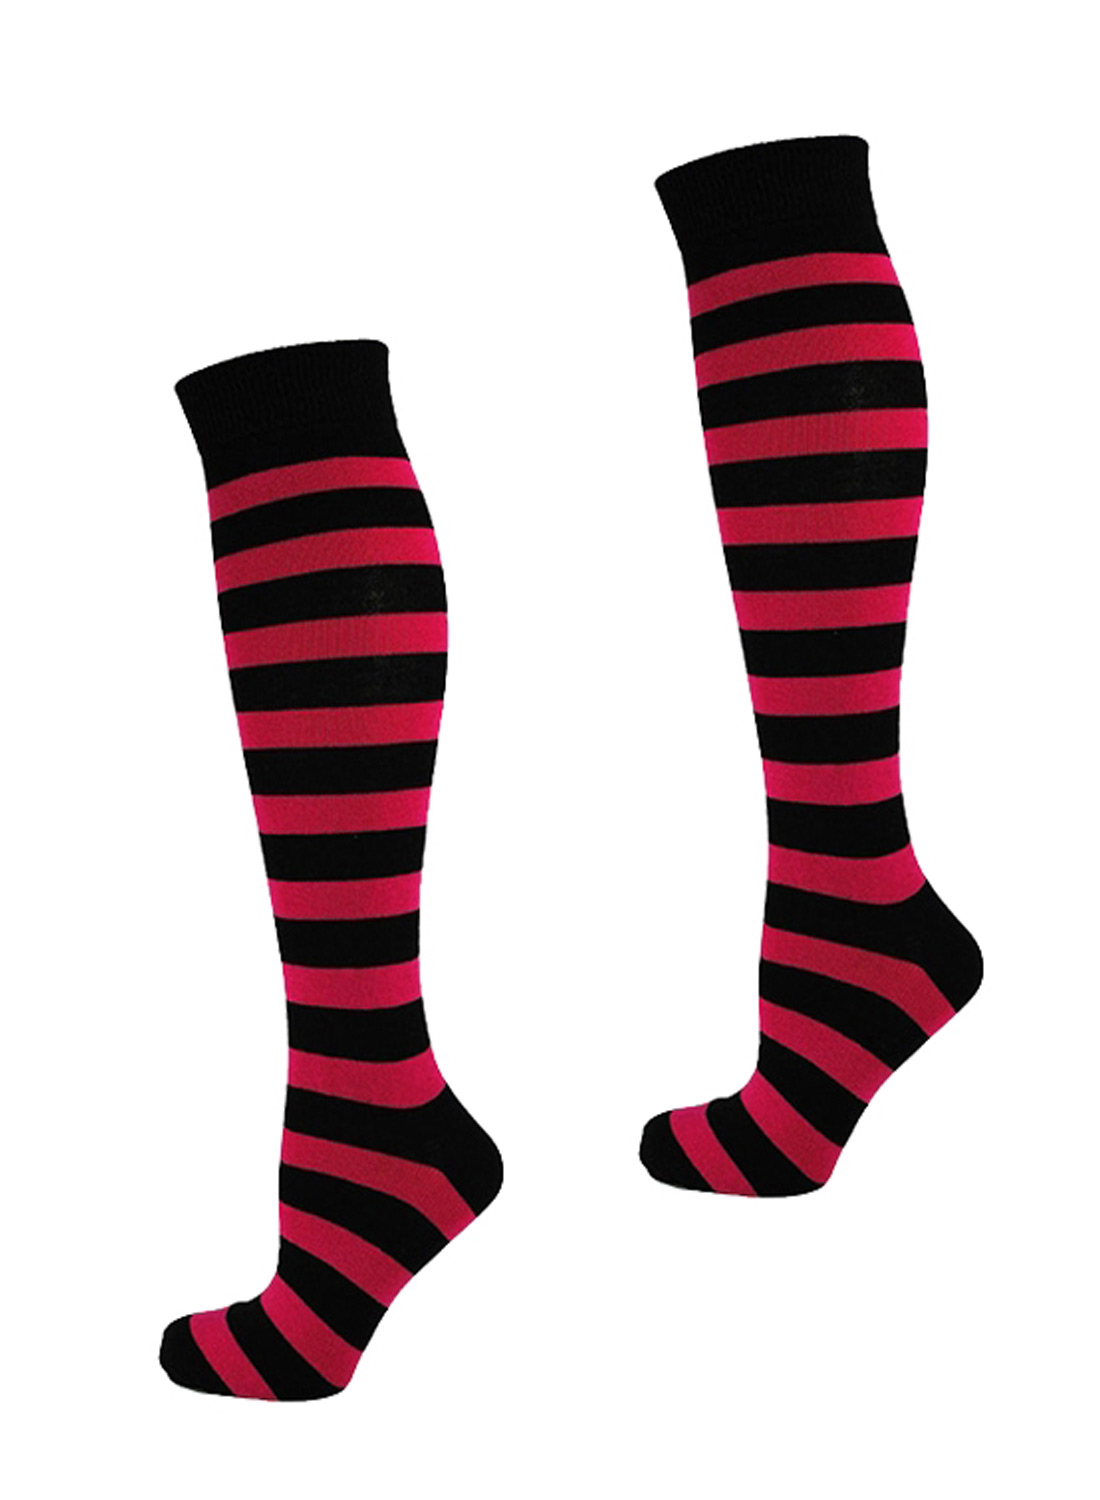 KH Socks Black Red Stripes